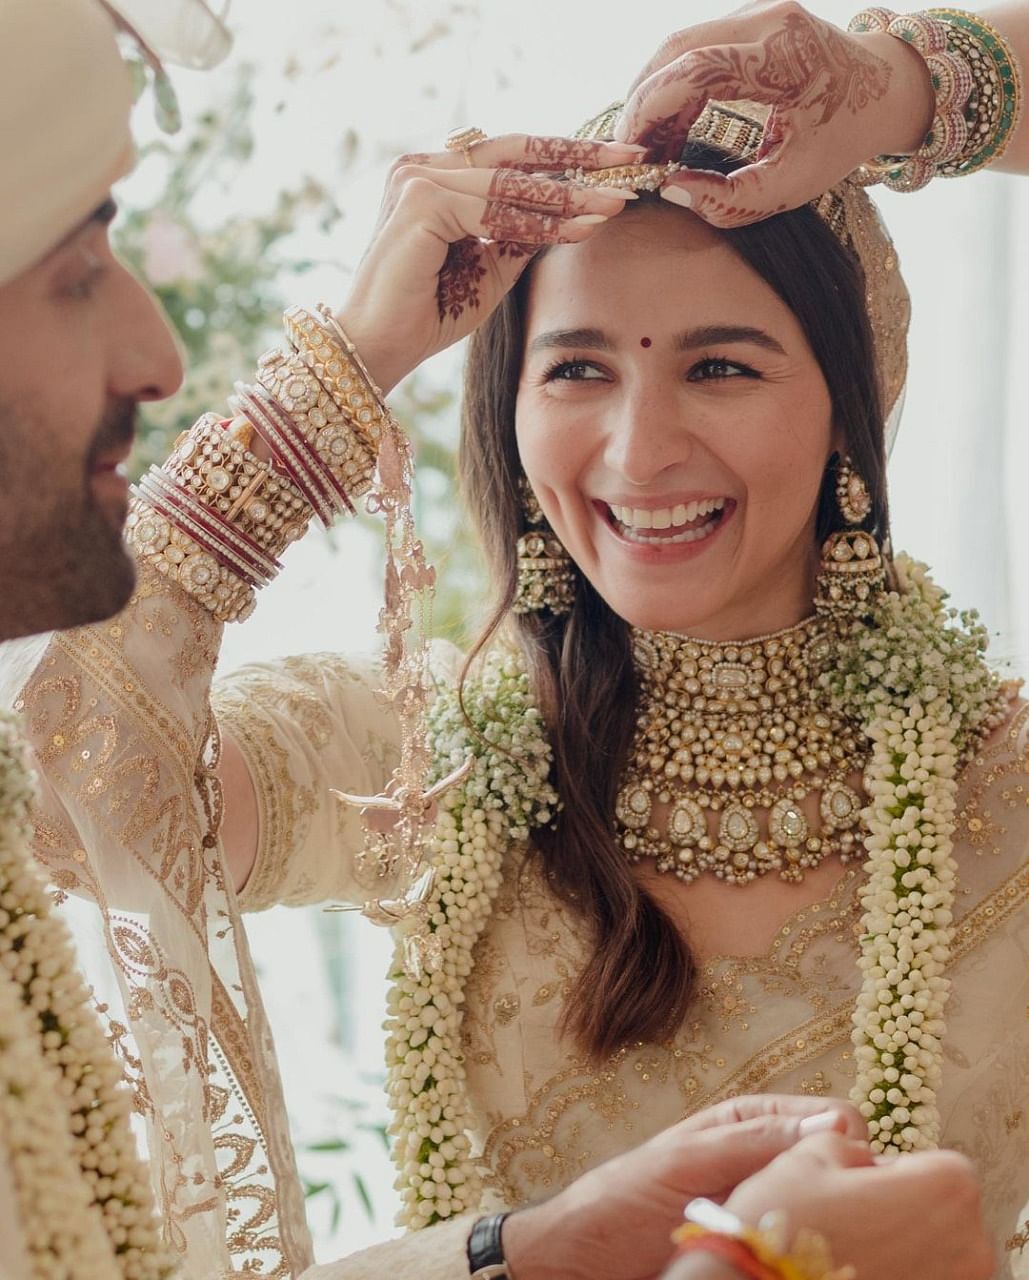 Alia Bhatt ने Ranbir Kapoor संग शादी के बाद इंस्टाग्राम पर लिखा- और अधिक यादें बनाने के लिए और इंतजार नहीं कर सकते